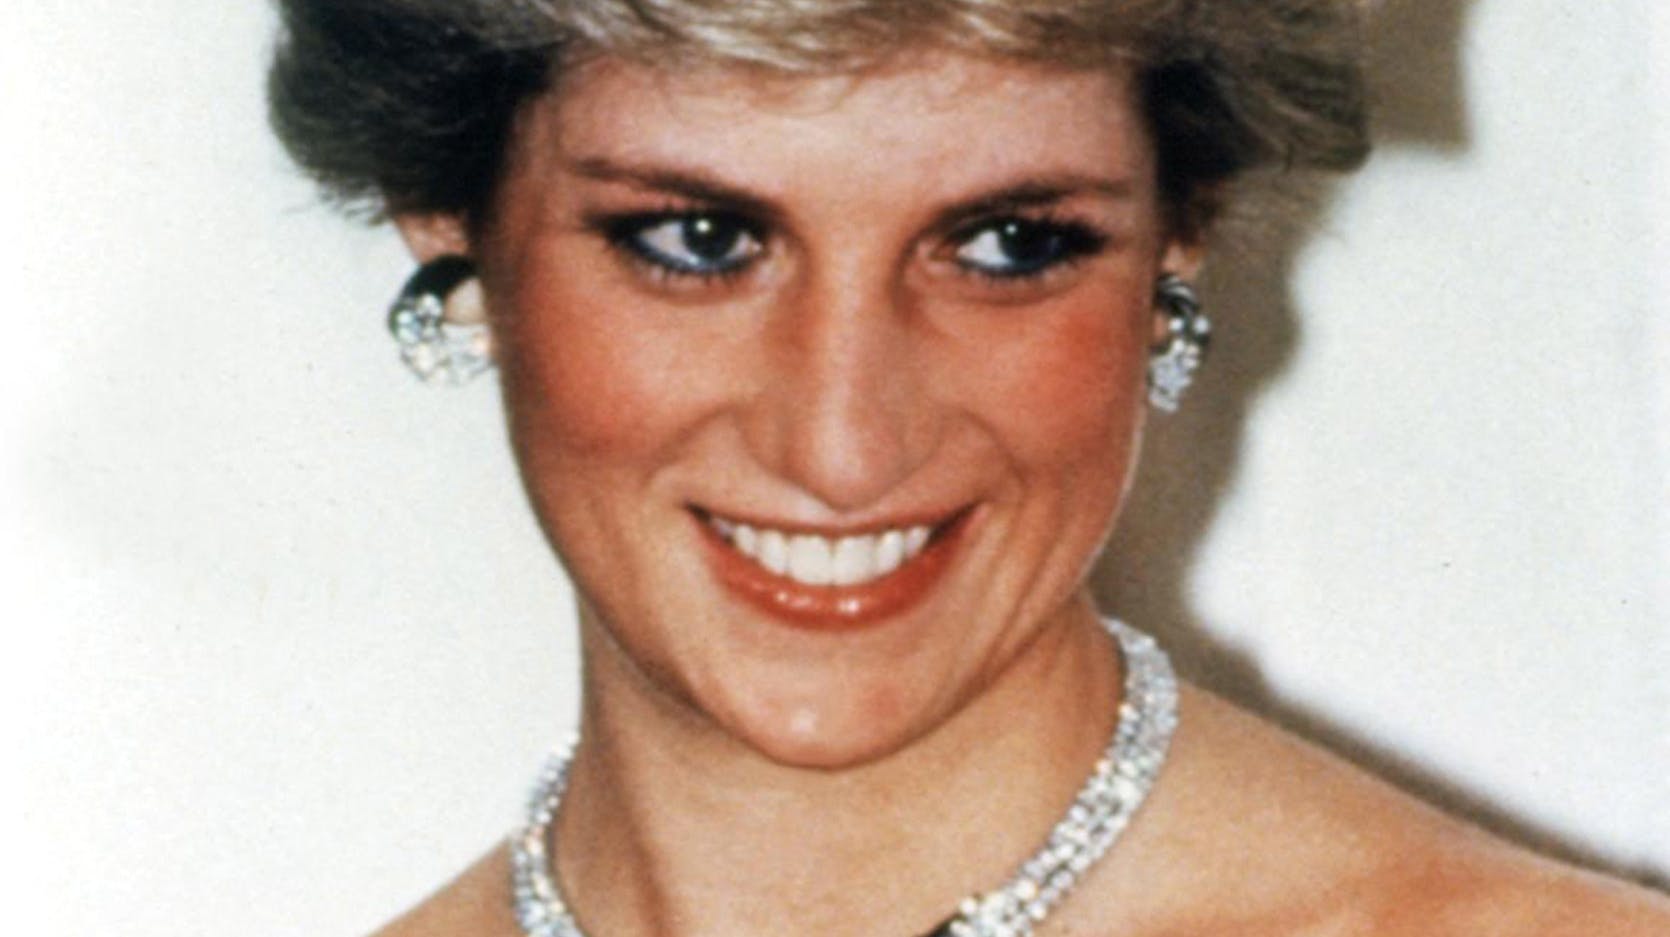 Flere af prinsesse Dianas kjoler, sko og hatte skal på auktion.